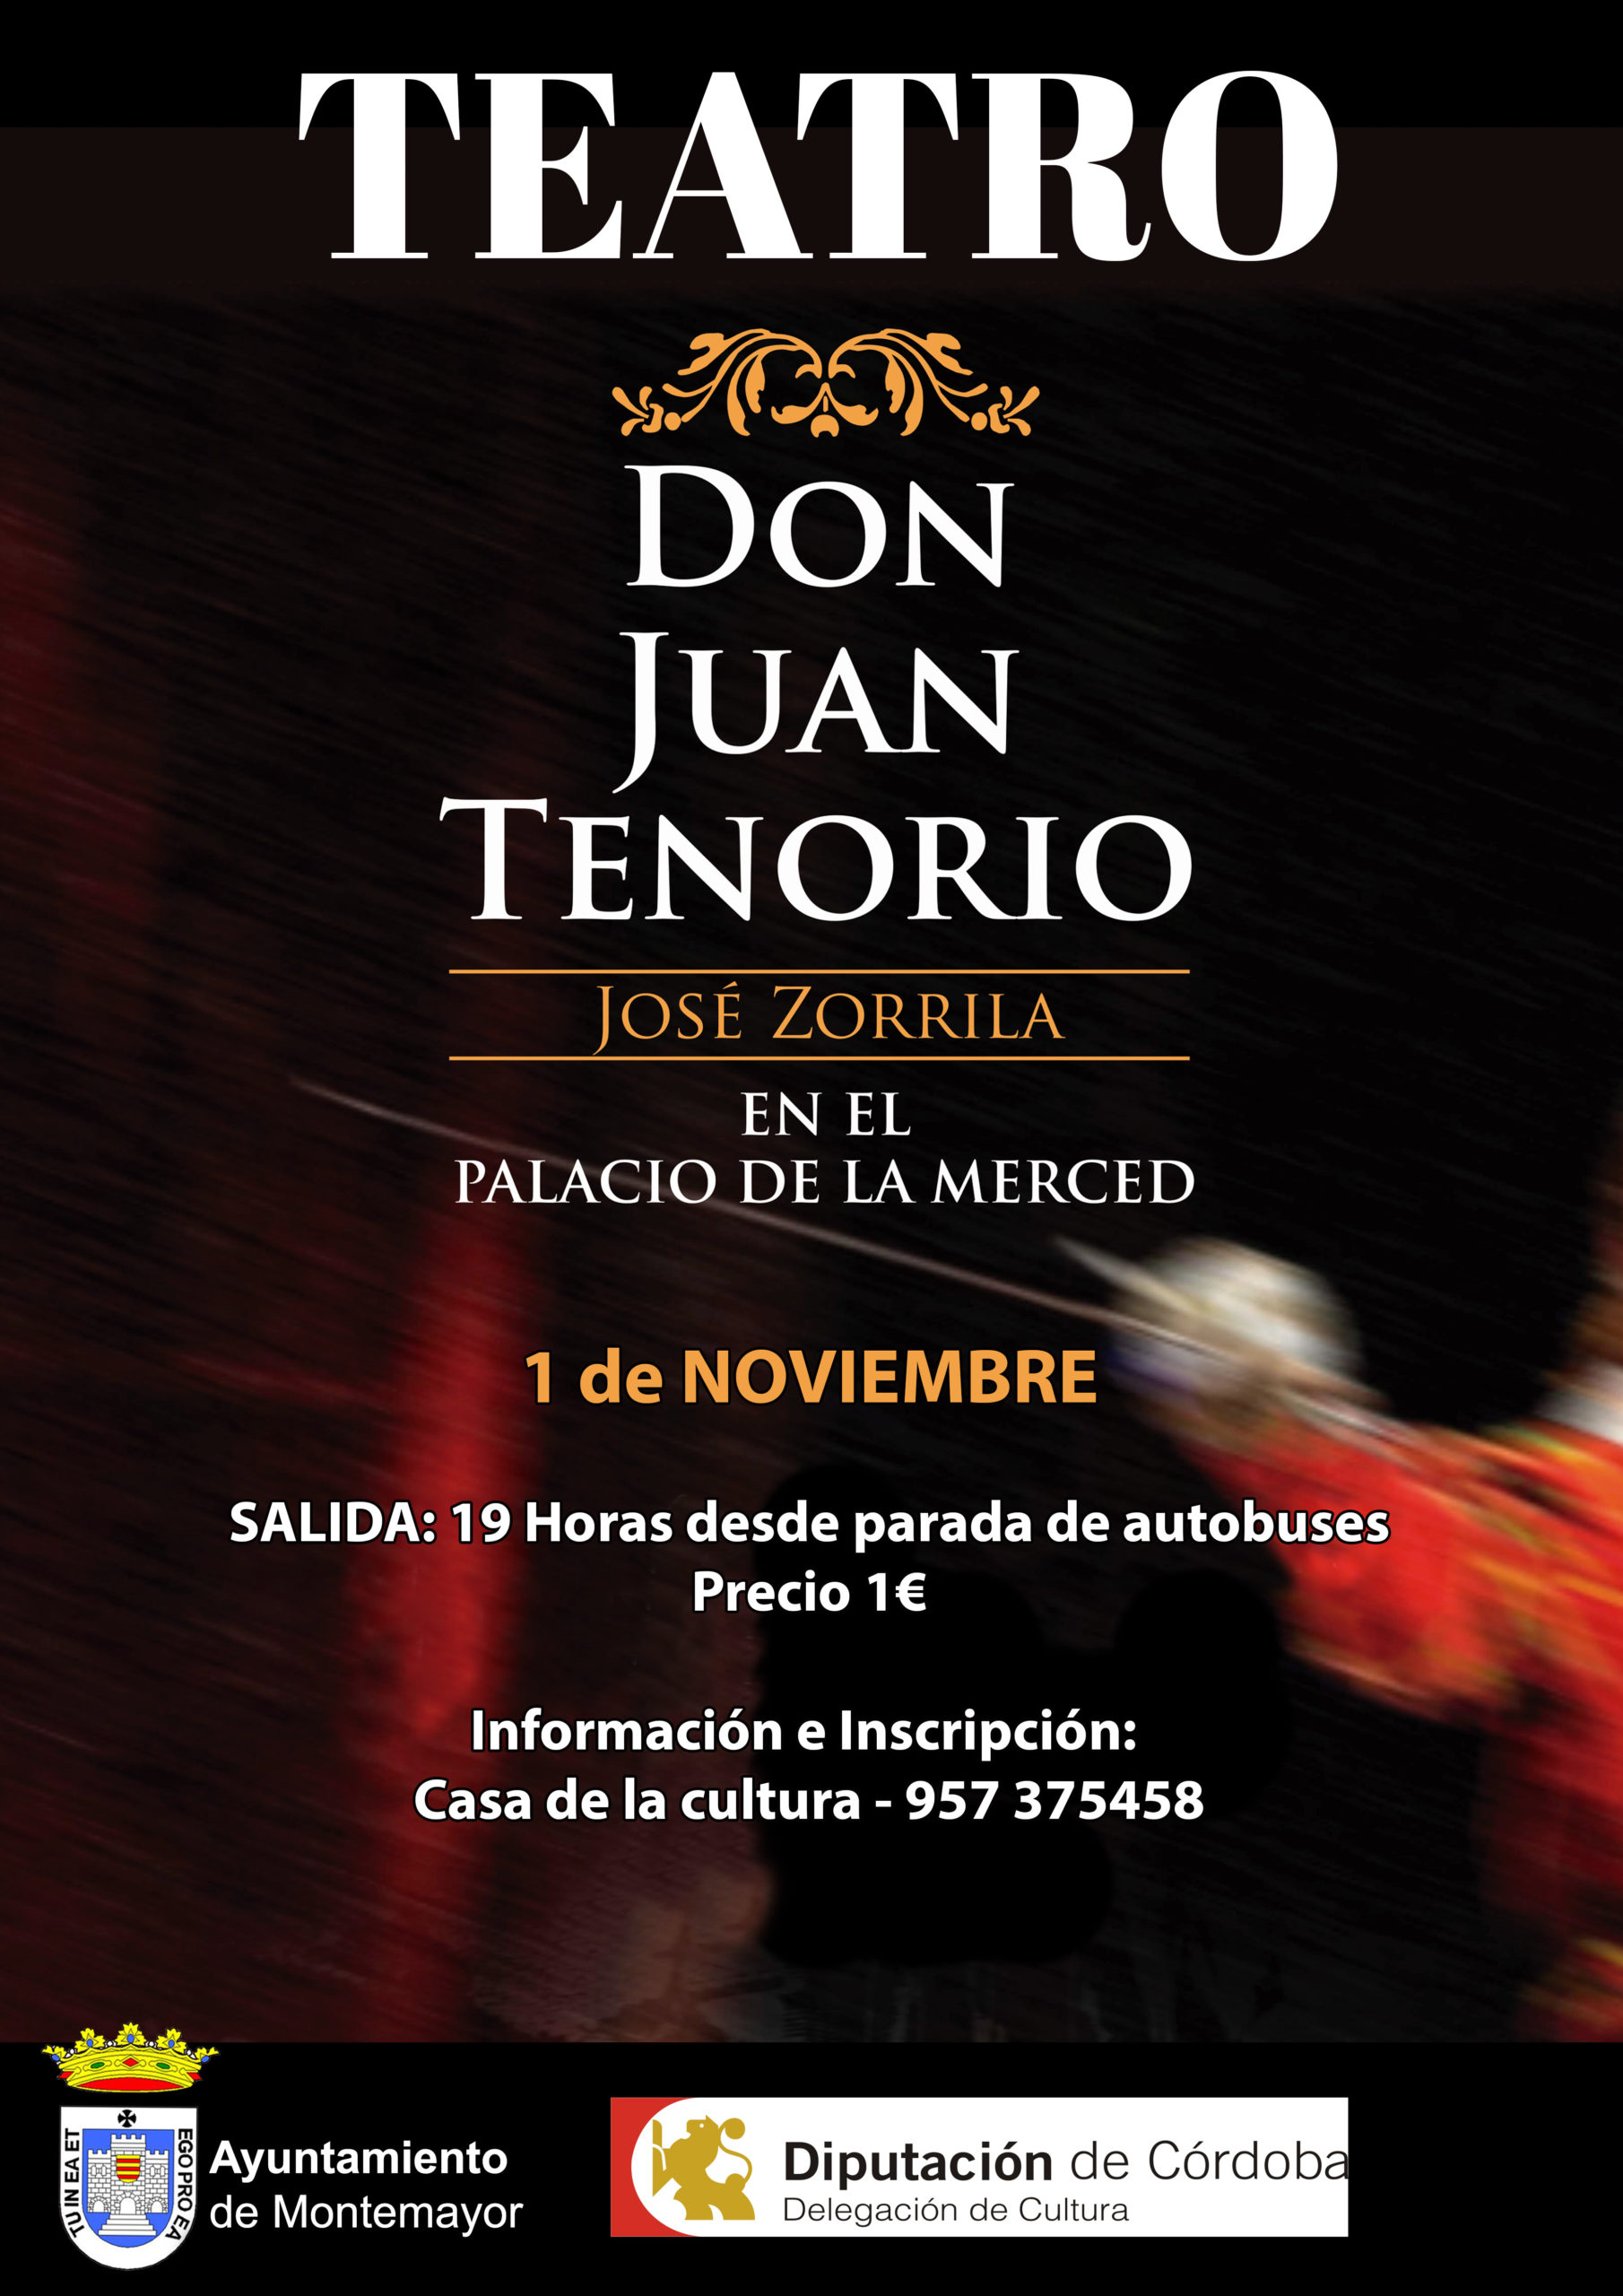 Teatro - Don Juan Tenorio en Palacio de la Merced 1